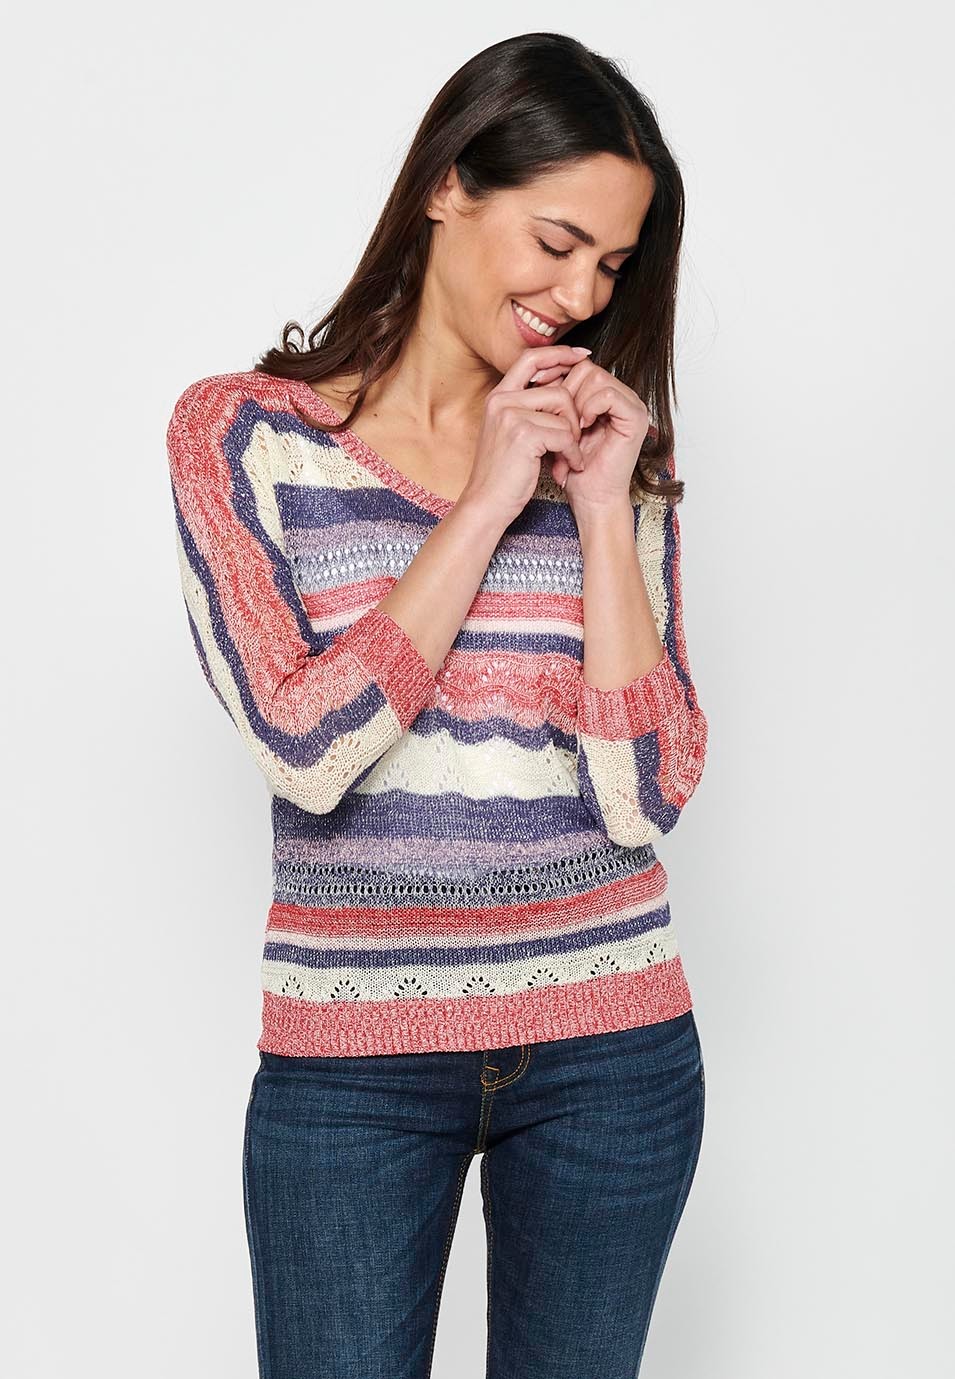 Pullover mit mittellangen Ärmeln und V-Ausschnitt. Mehrfarbig gestreiftes, durchbrochenes Trikot für Damen